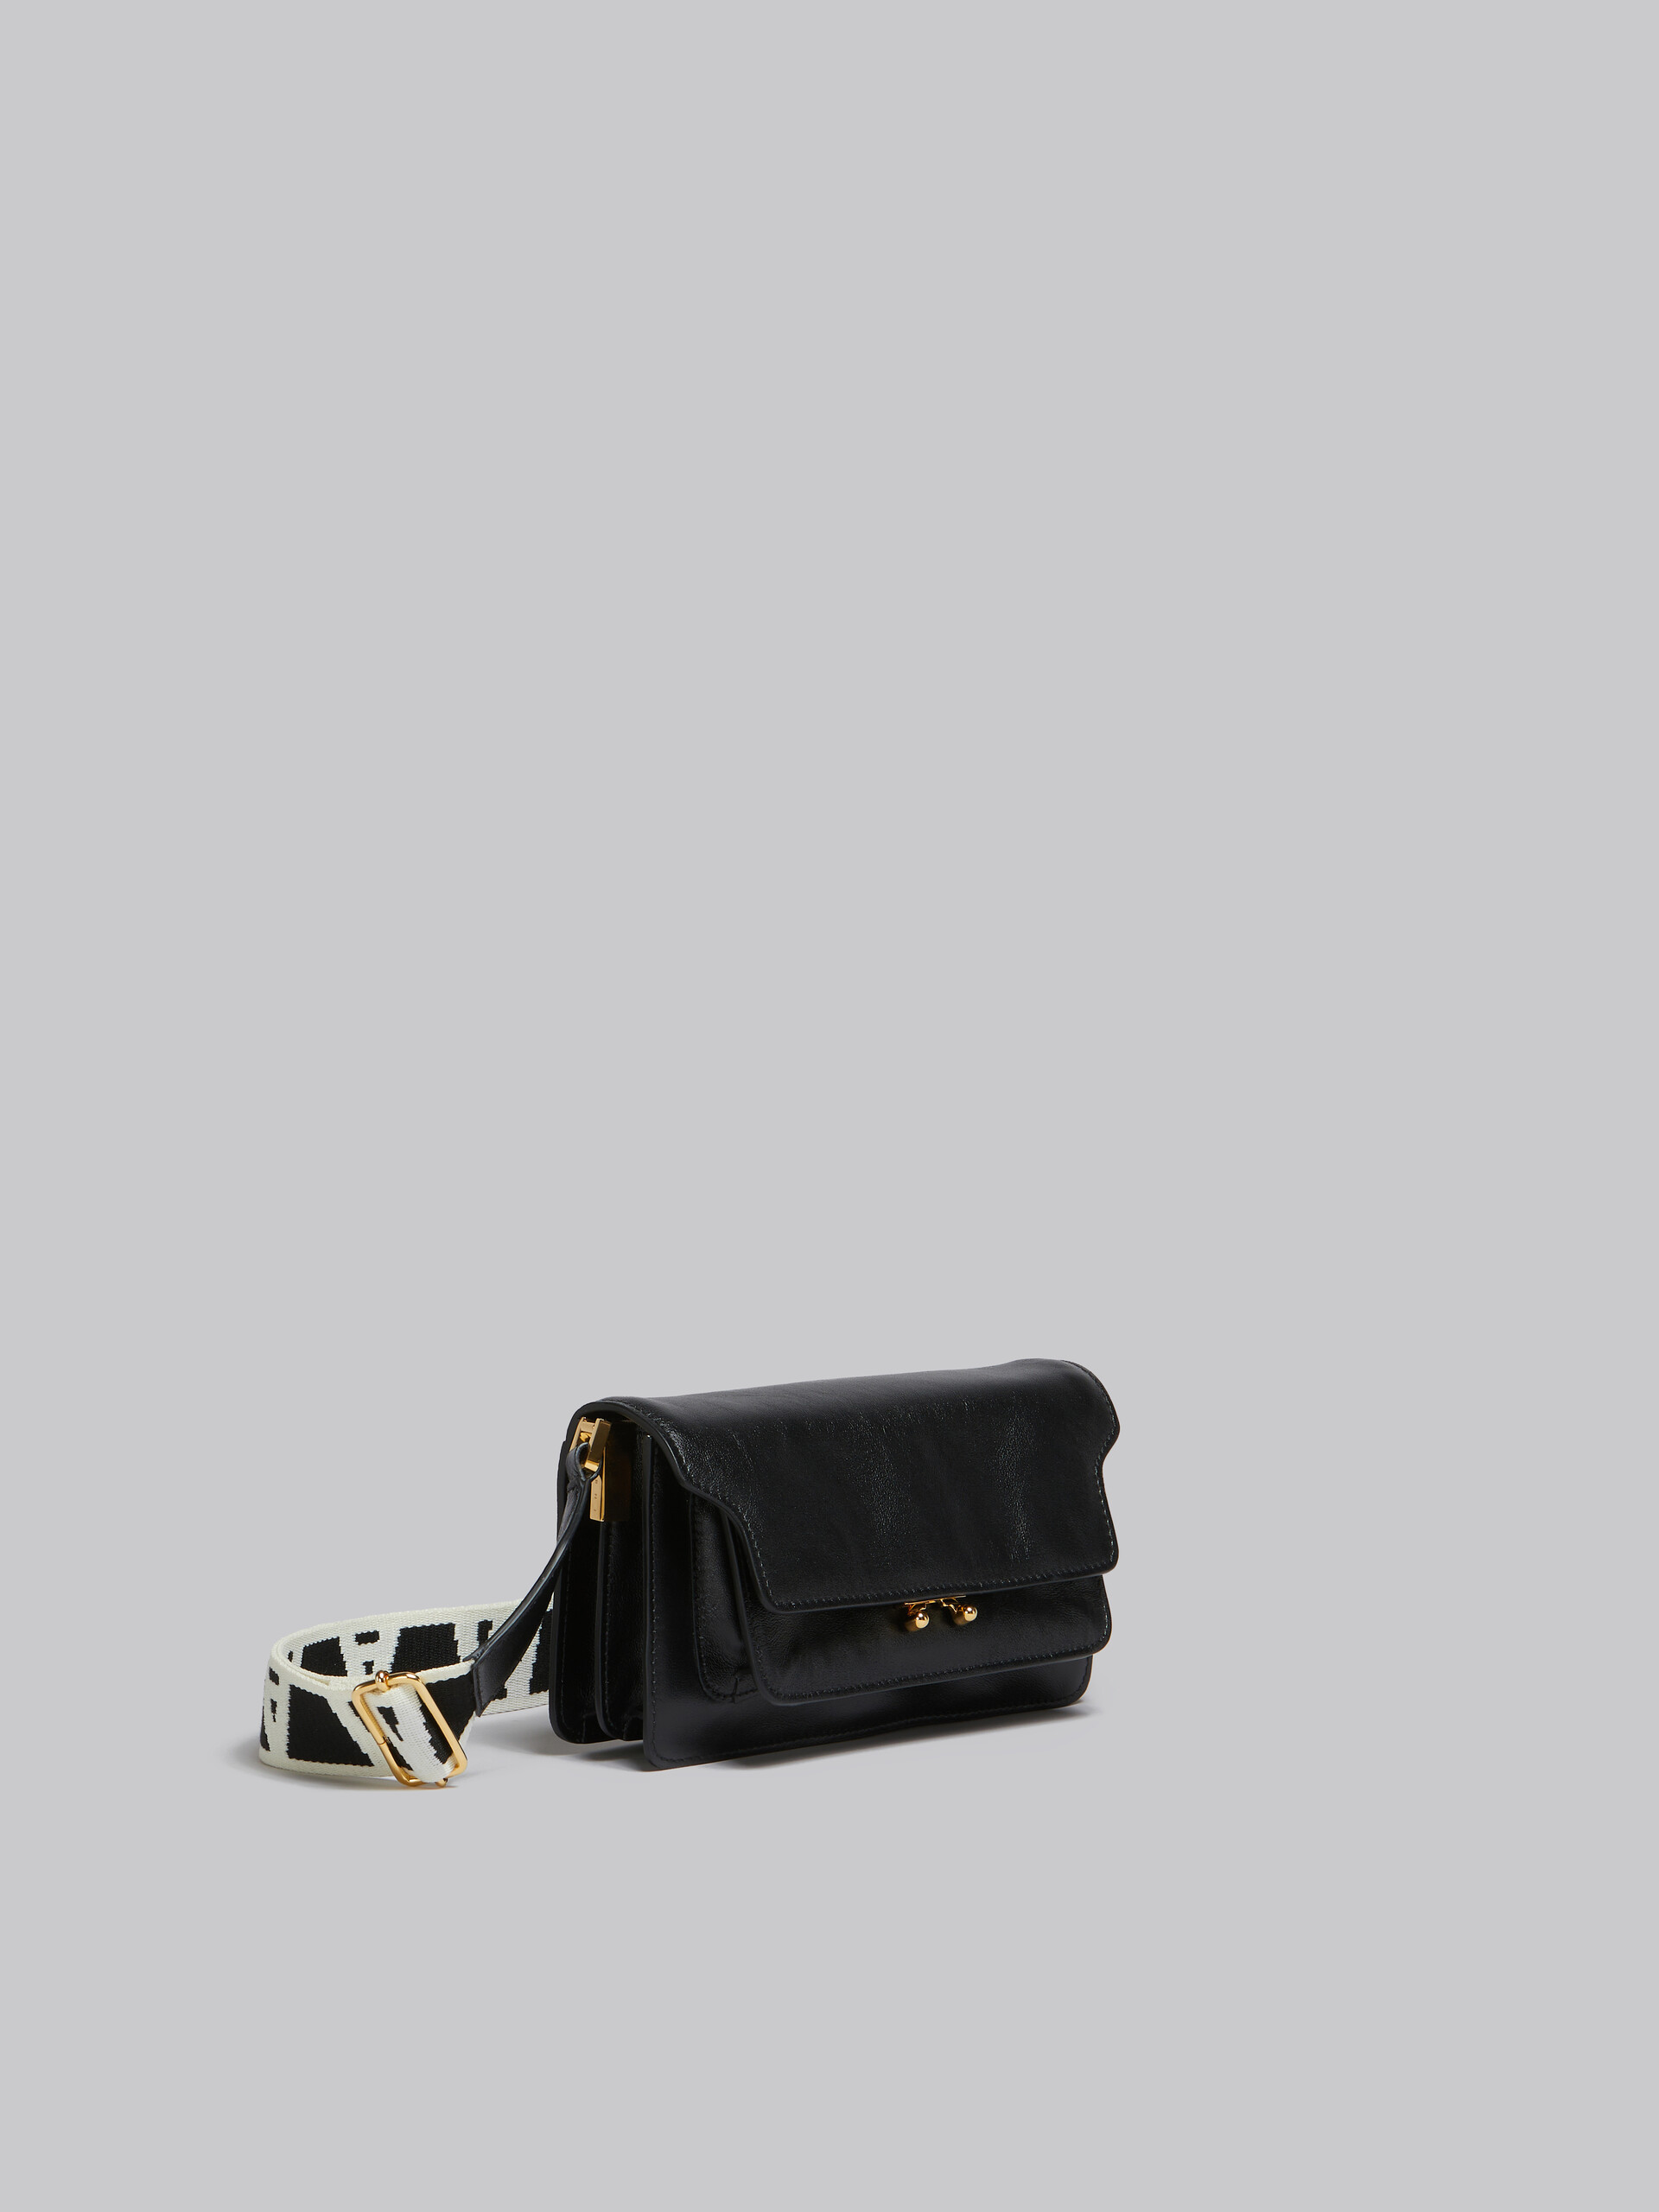 Trunk Soft Bag E/W in pelle marrone con tracolla logata - Borse a spalla - Image 6